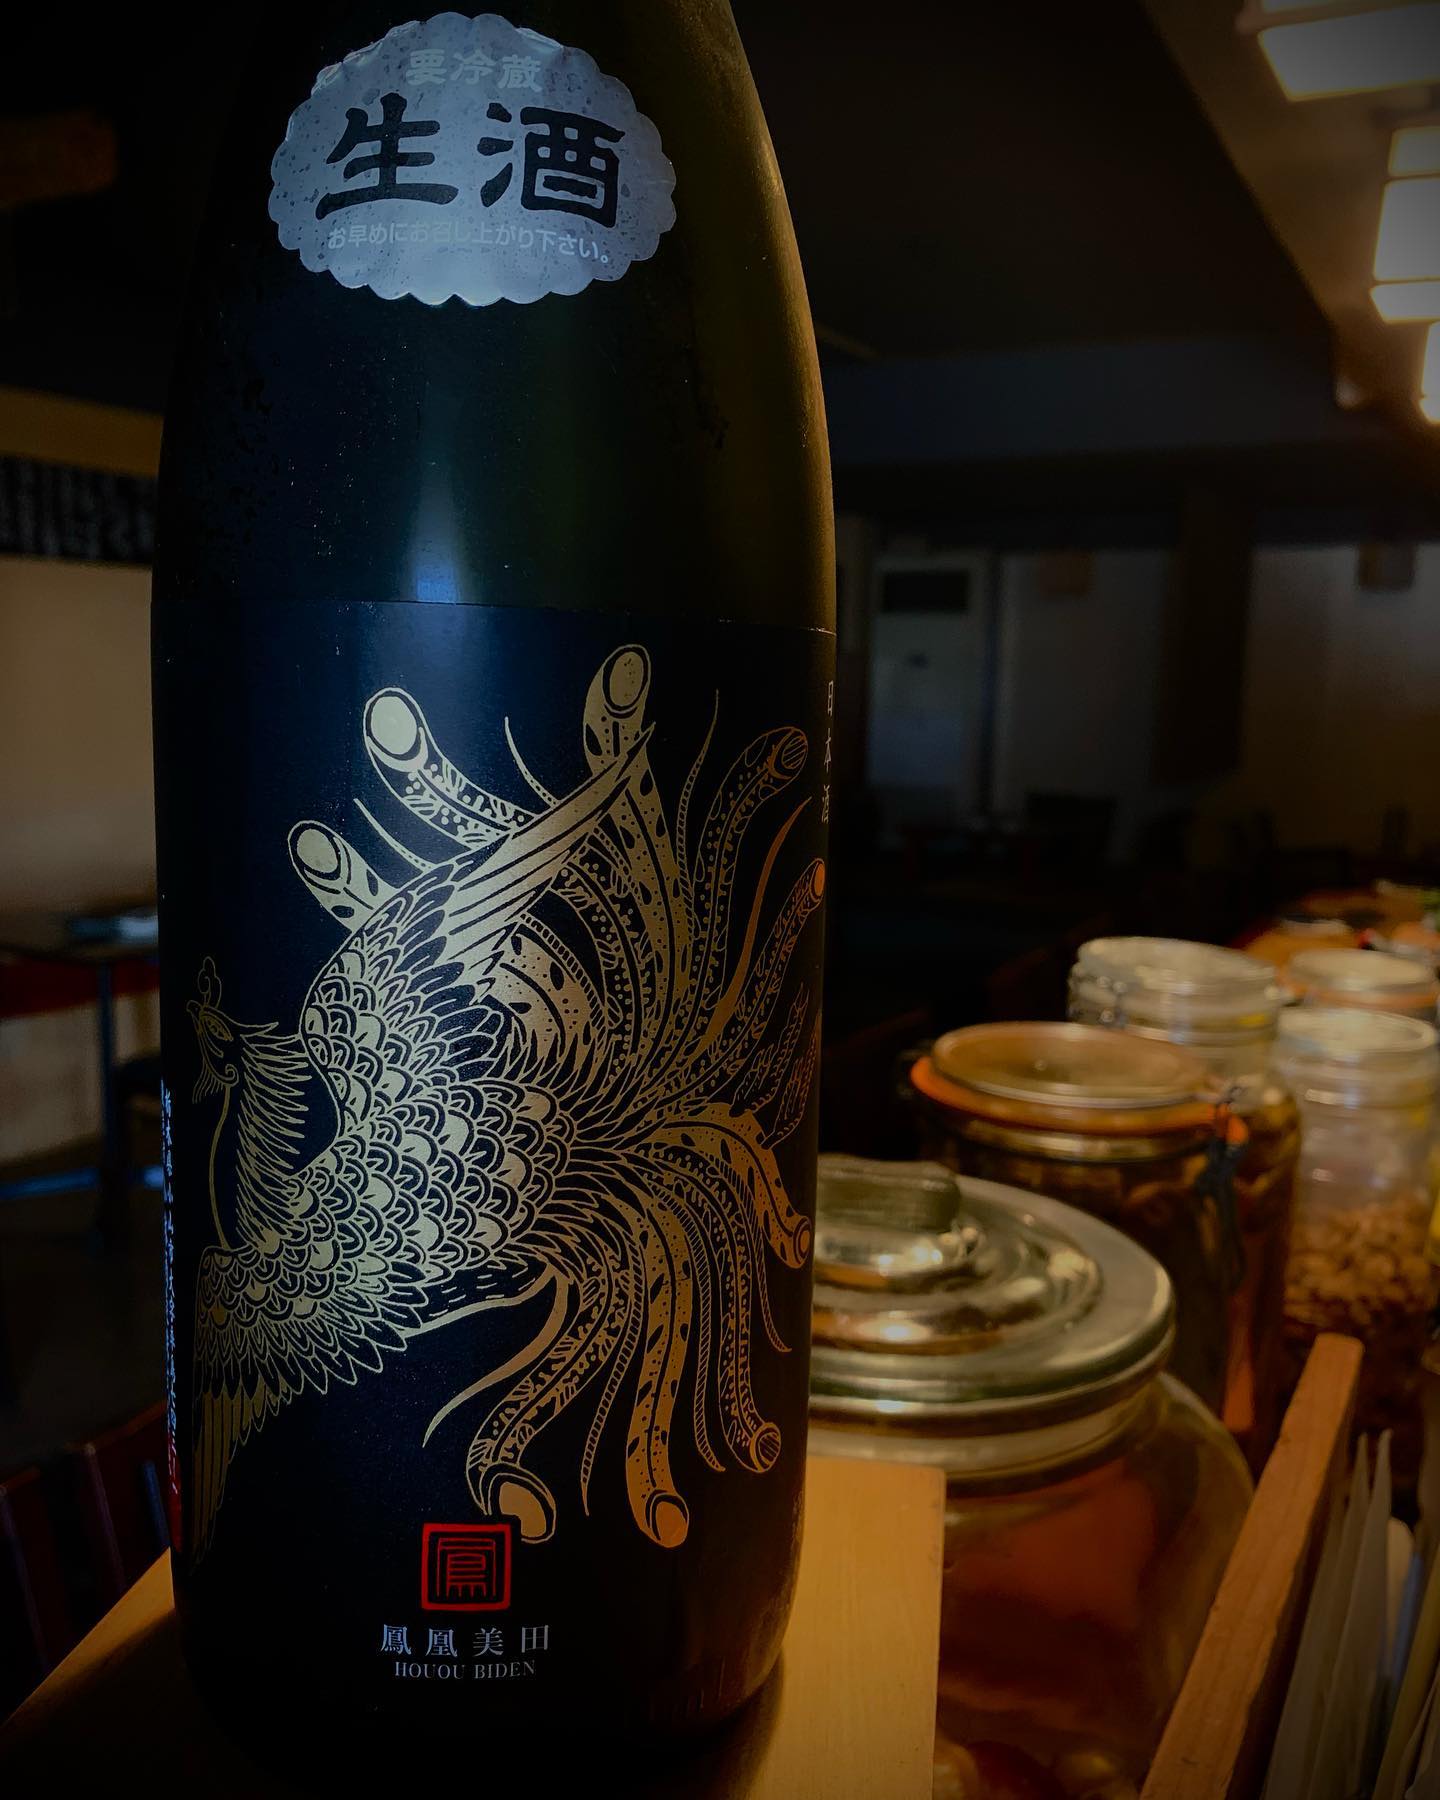 本日の日本酒紹介
｢鳳凰美田｣

またの名をBLACKPhoenix
お隣の栃木県の日本酒でフルーティーで厚みのある酸味と柔らかで芳醇な味わいは、温度帯によって、また
グラスに注いでからも様々な表情の変化や広がりを見せてくれます。
生き生きとしたパワー溢れる華やかな「愛山」の魅力を、存分にお楽しみください。

 #